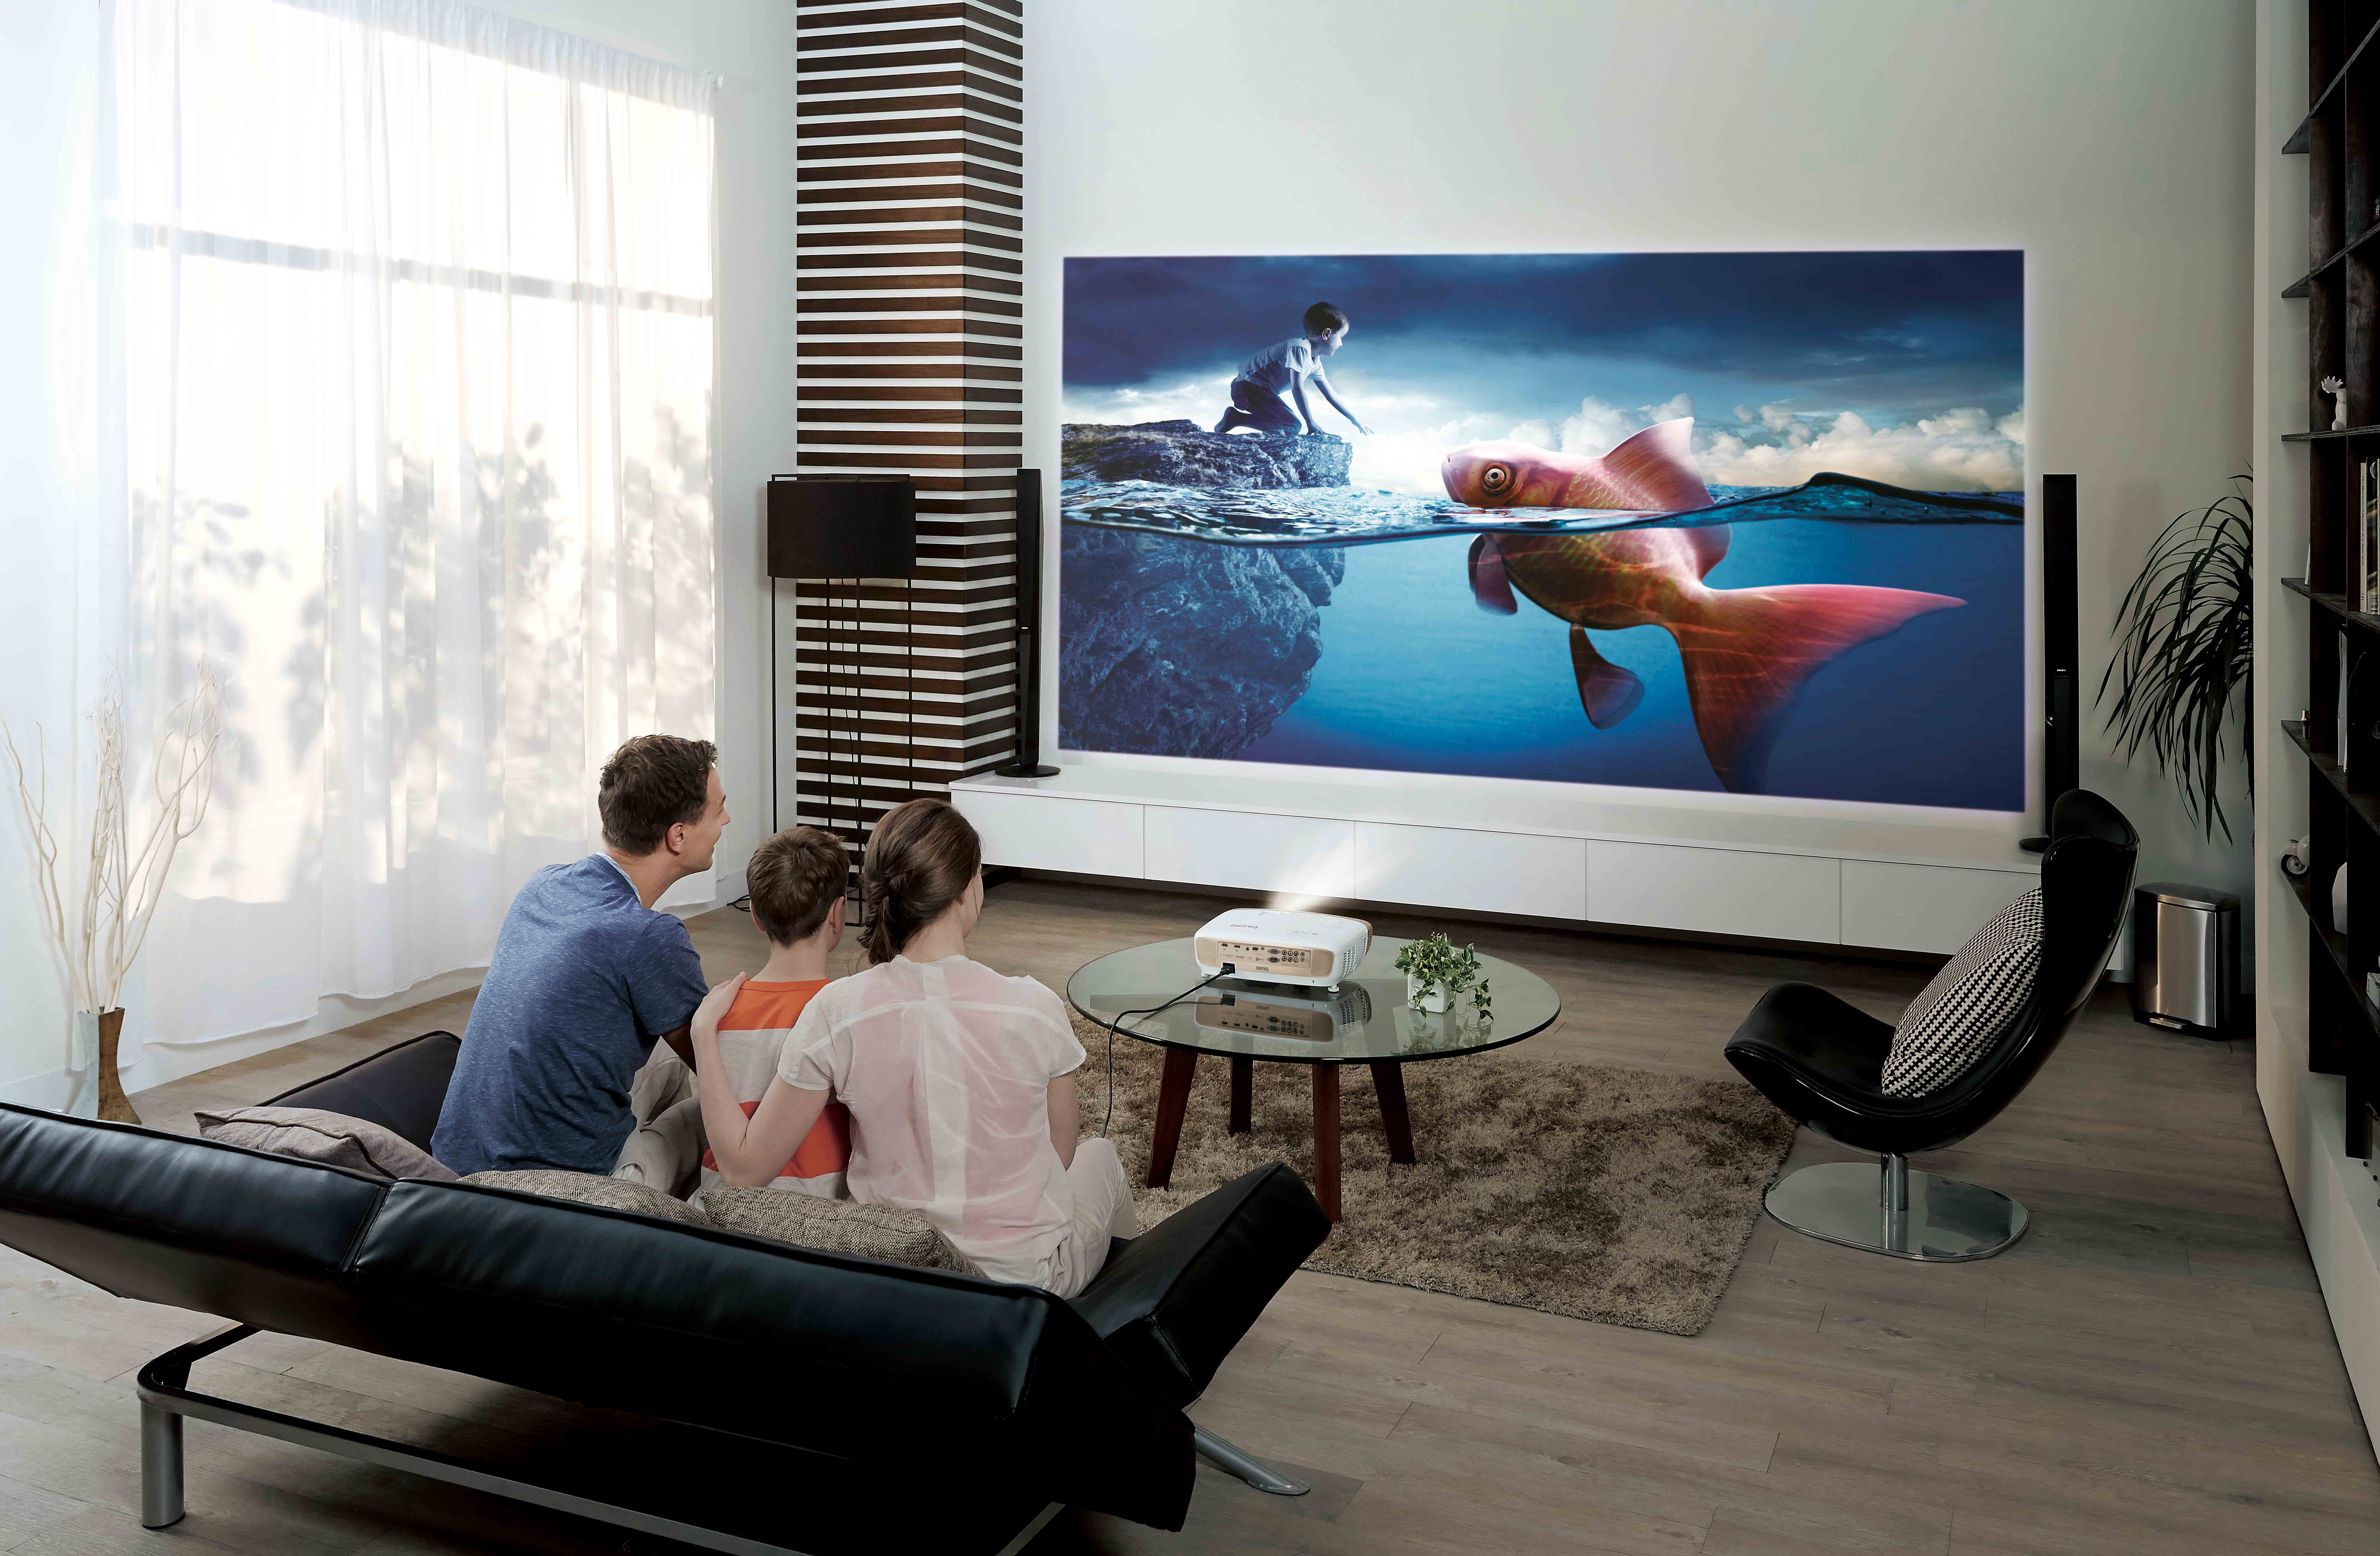 Формат для просмотра на телевизоре. Samsung 100 дюймов. Проектор Vivitek d853w. Домашний кинотеатр с проектором и экраном.